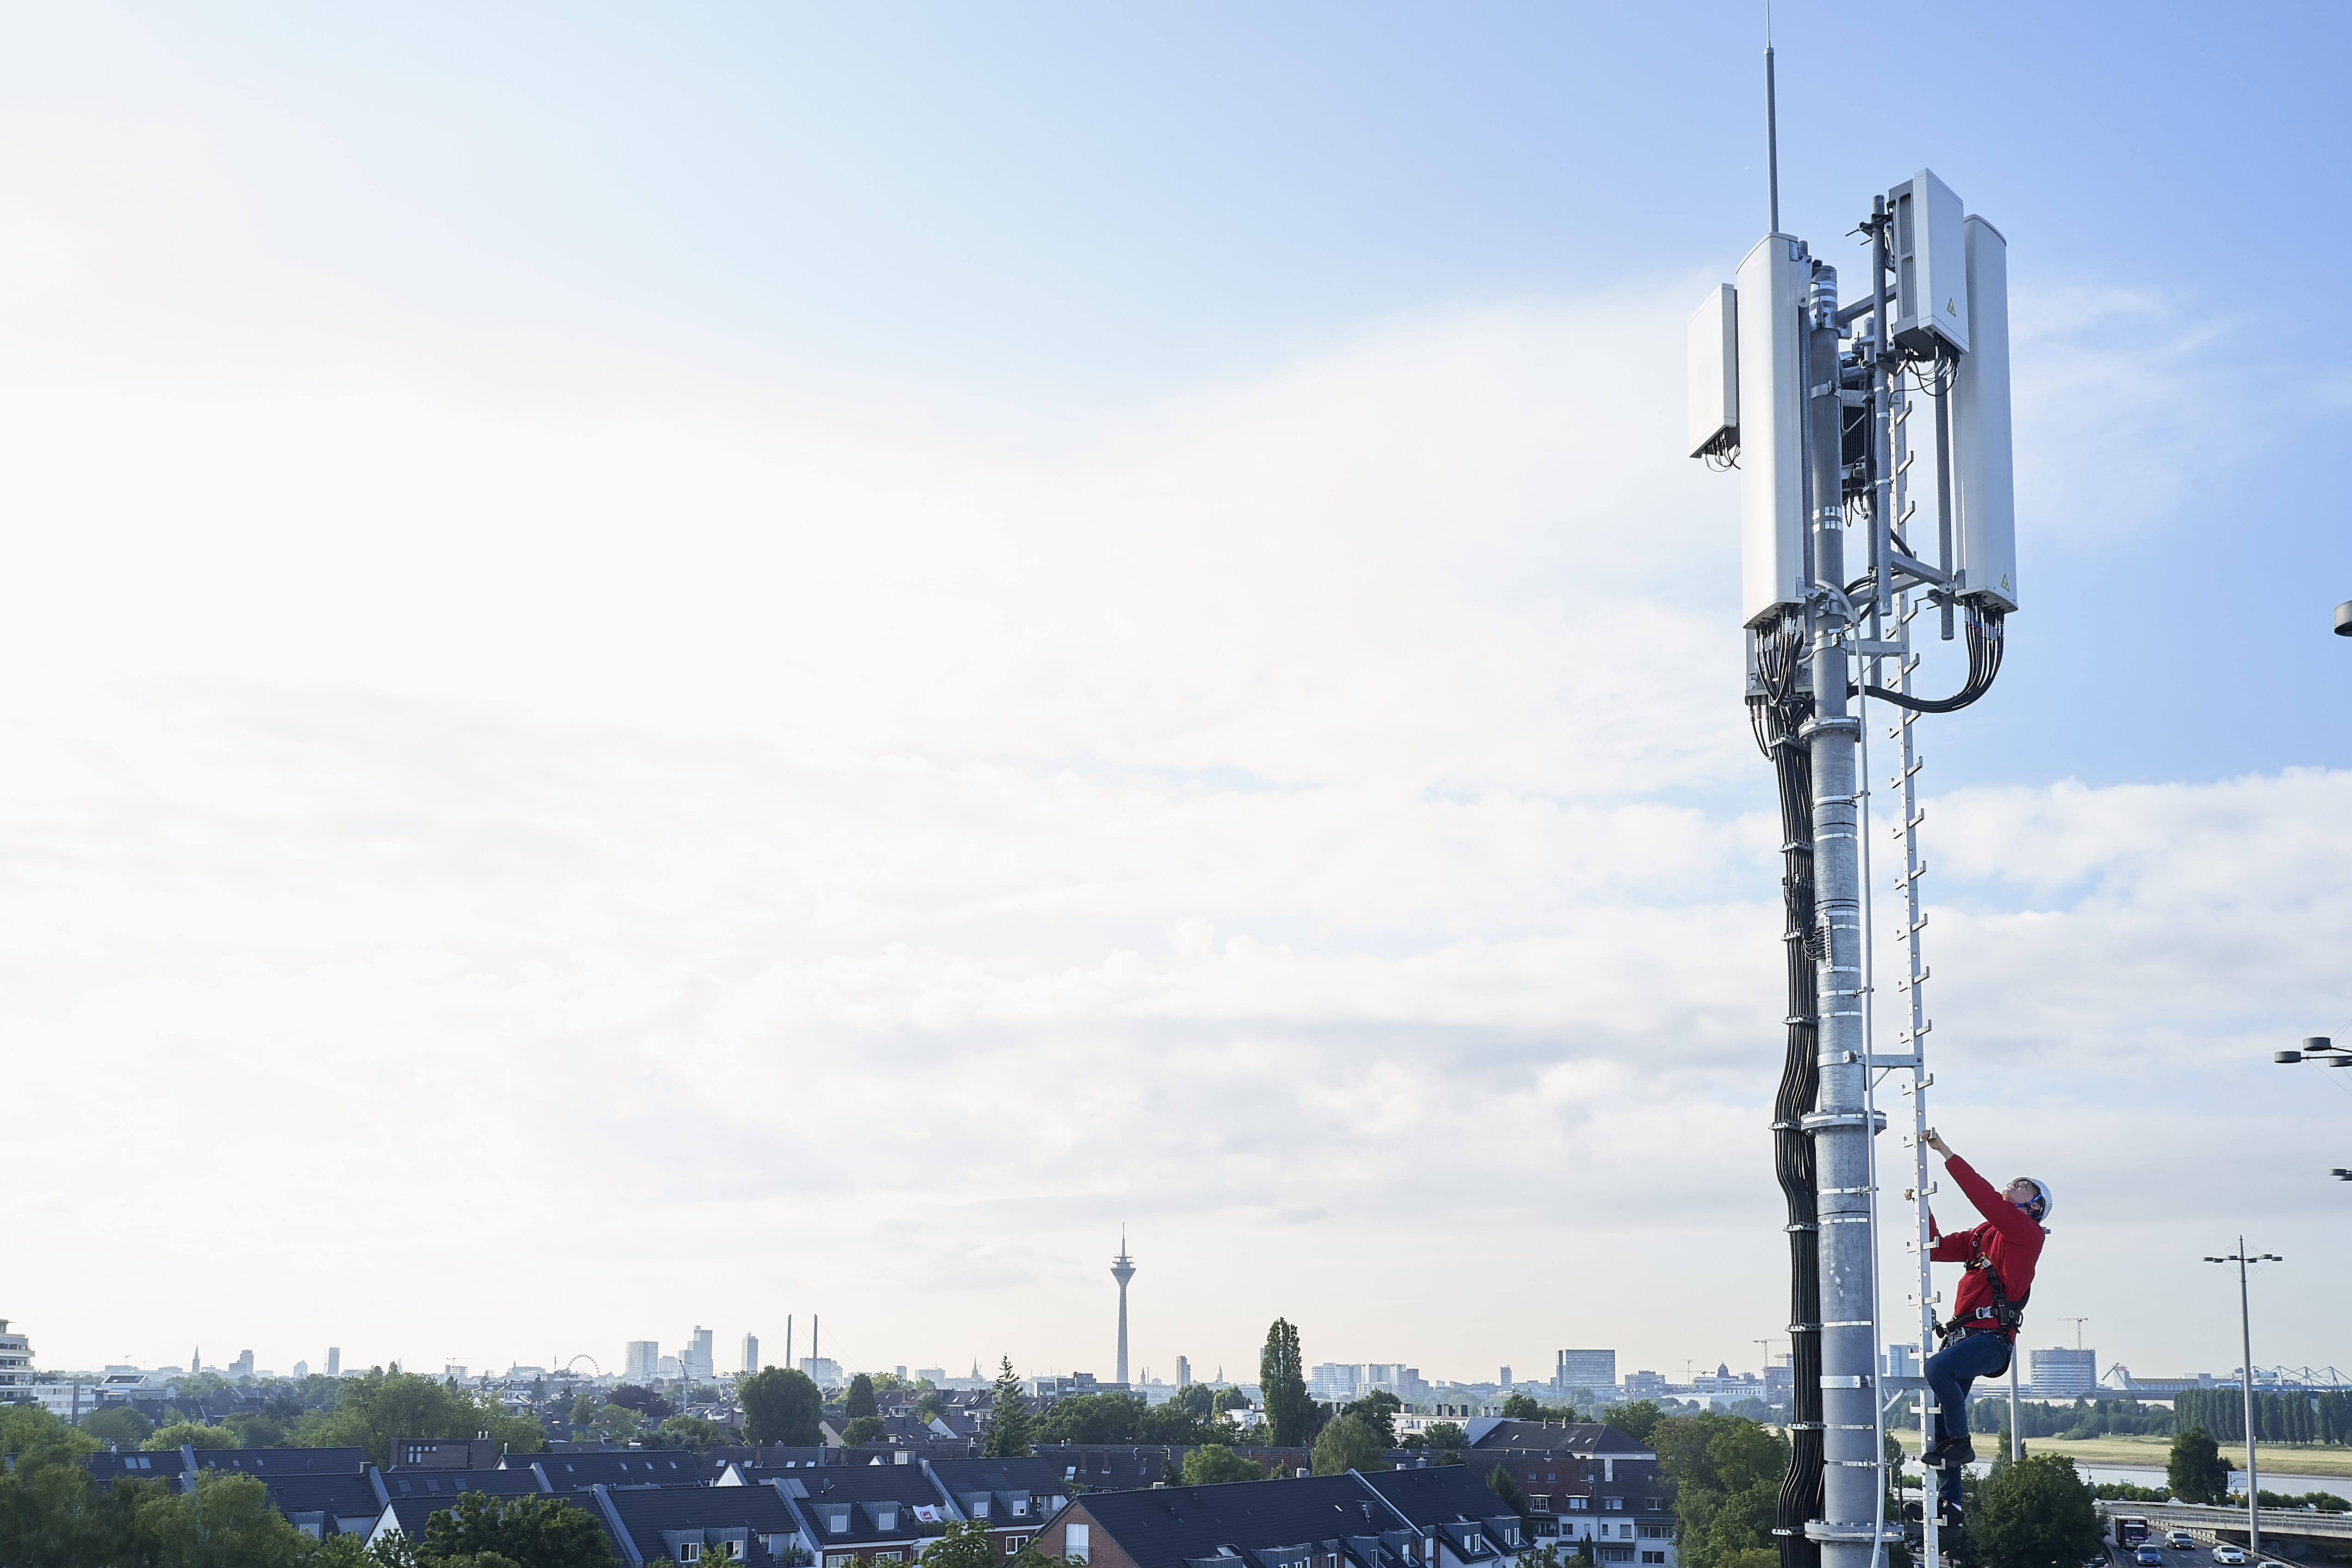 1&1 5G Netzausbau: Bundeskartellamt prüft mögliche kartellrechtswidrige Behinderung durch Vodafone und Vantage Towers